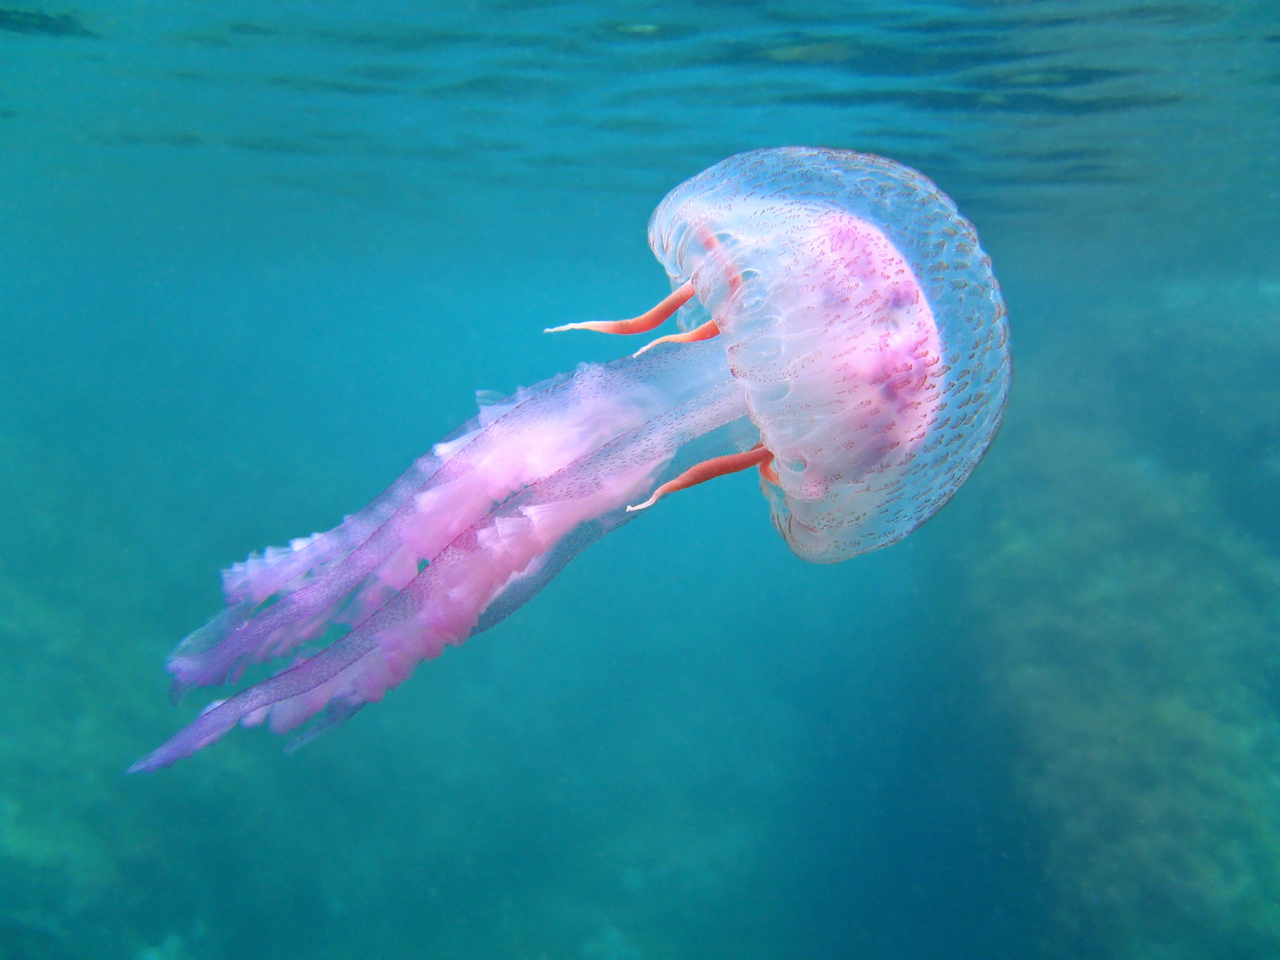 <p><strong>Медузите се адаптират добре към изменението на климата</strong>- За разлика от повечето морски животни, медузите виреят във водата въпреки горещите вълни, подкисляването на океана, прекомерния улов и други фактори.&nbsp;Коралите, черупчестите мекотели и други организми, използващи черупки, страдат най-много от окисляването, докато медузите не са толкова податливи на отрицателните ефекти. Тъй като климатичната криза се влошава, експертите смятат, че популациите на медузите ще се променят.&nbsp;В по-голямата си част експертите прогнозират, че ще се появи дисбаланс между медузите и другите животни.&nbsp;Например, тъй като медузите оцеляват по-добре във води с ниска концентрация на кислород, те скоро може значително да превъзхождат планктона, техния основен хранителен източник.</p>